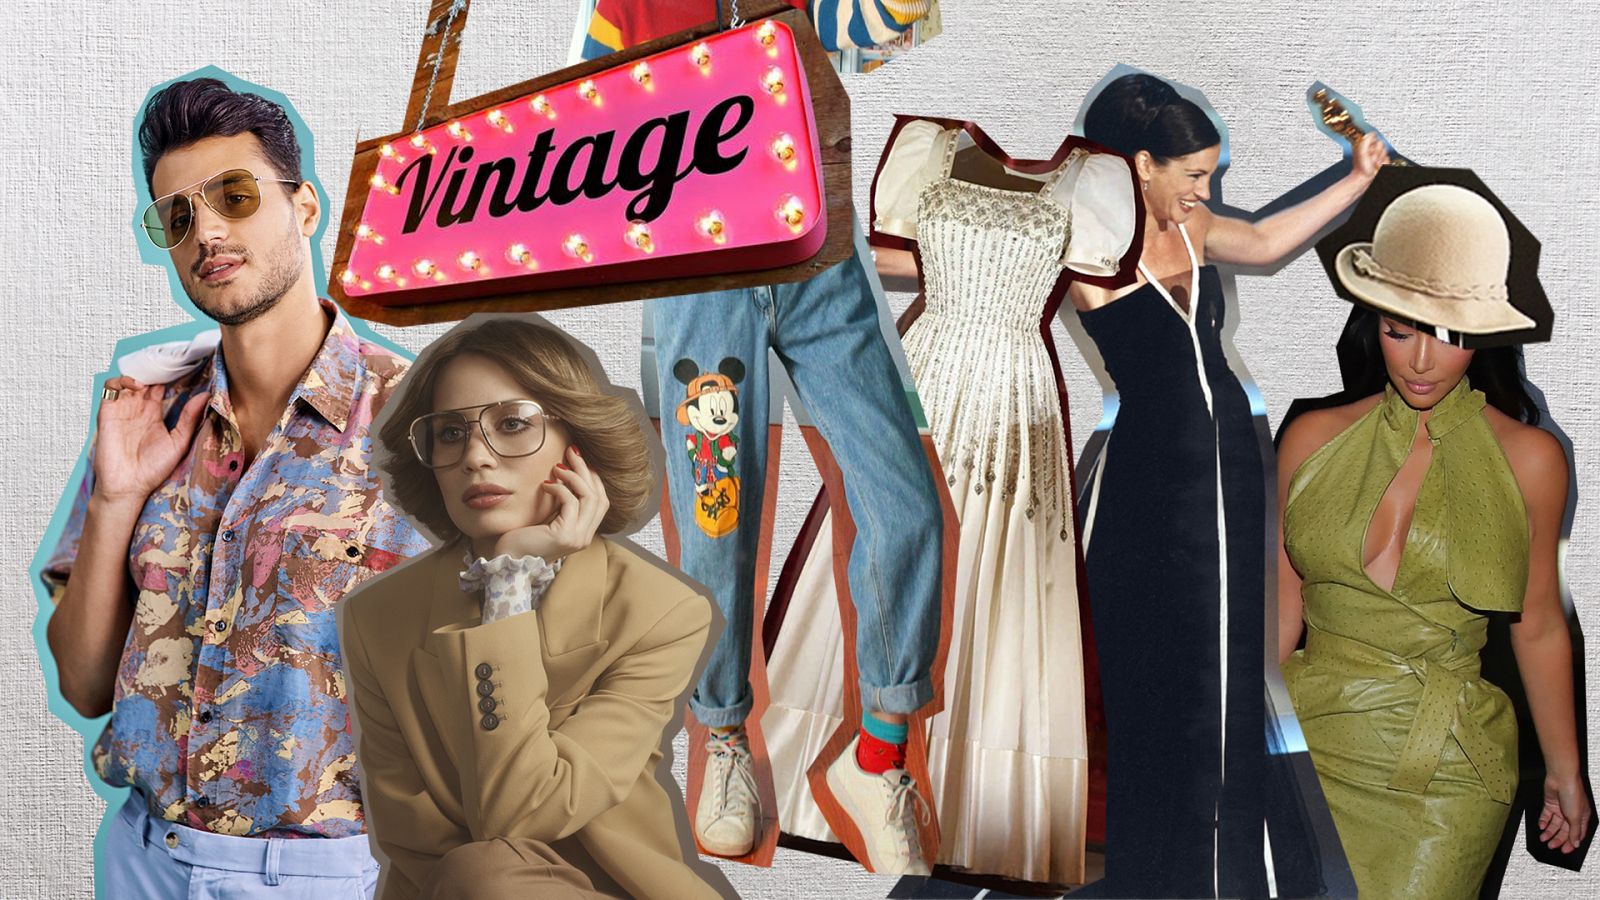 La mejor ruta del 'vintage': un recorrido por los templos de la moda con 'otras vidas'